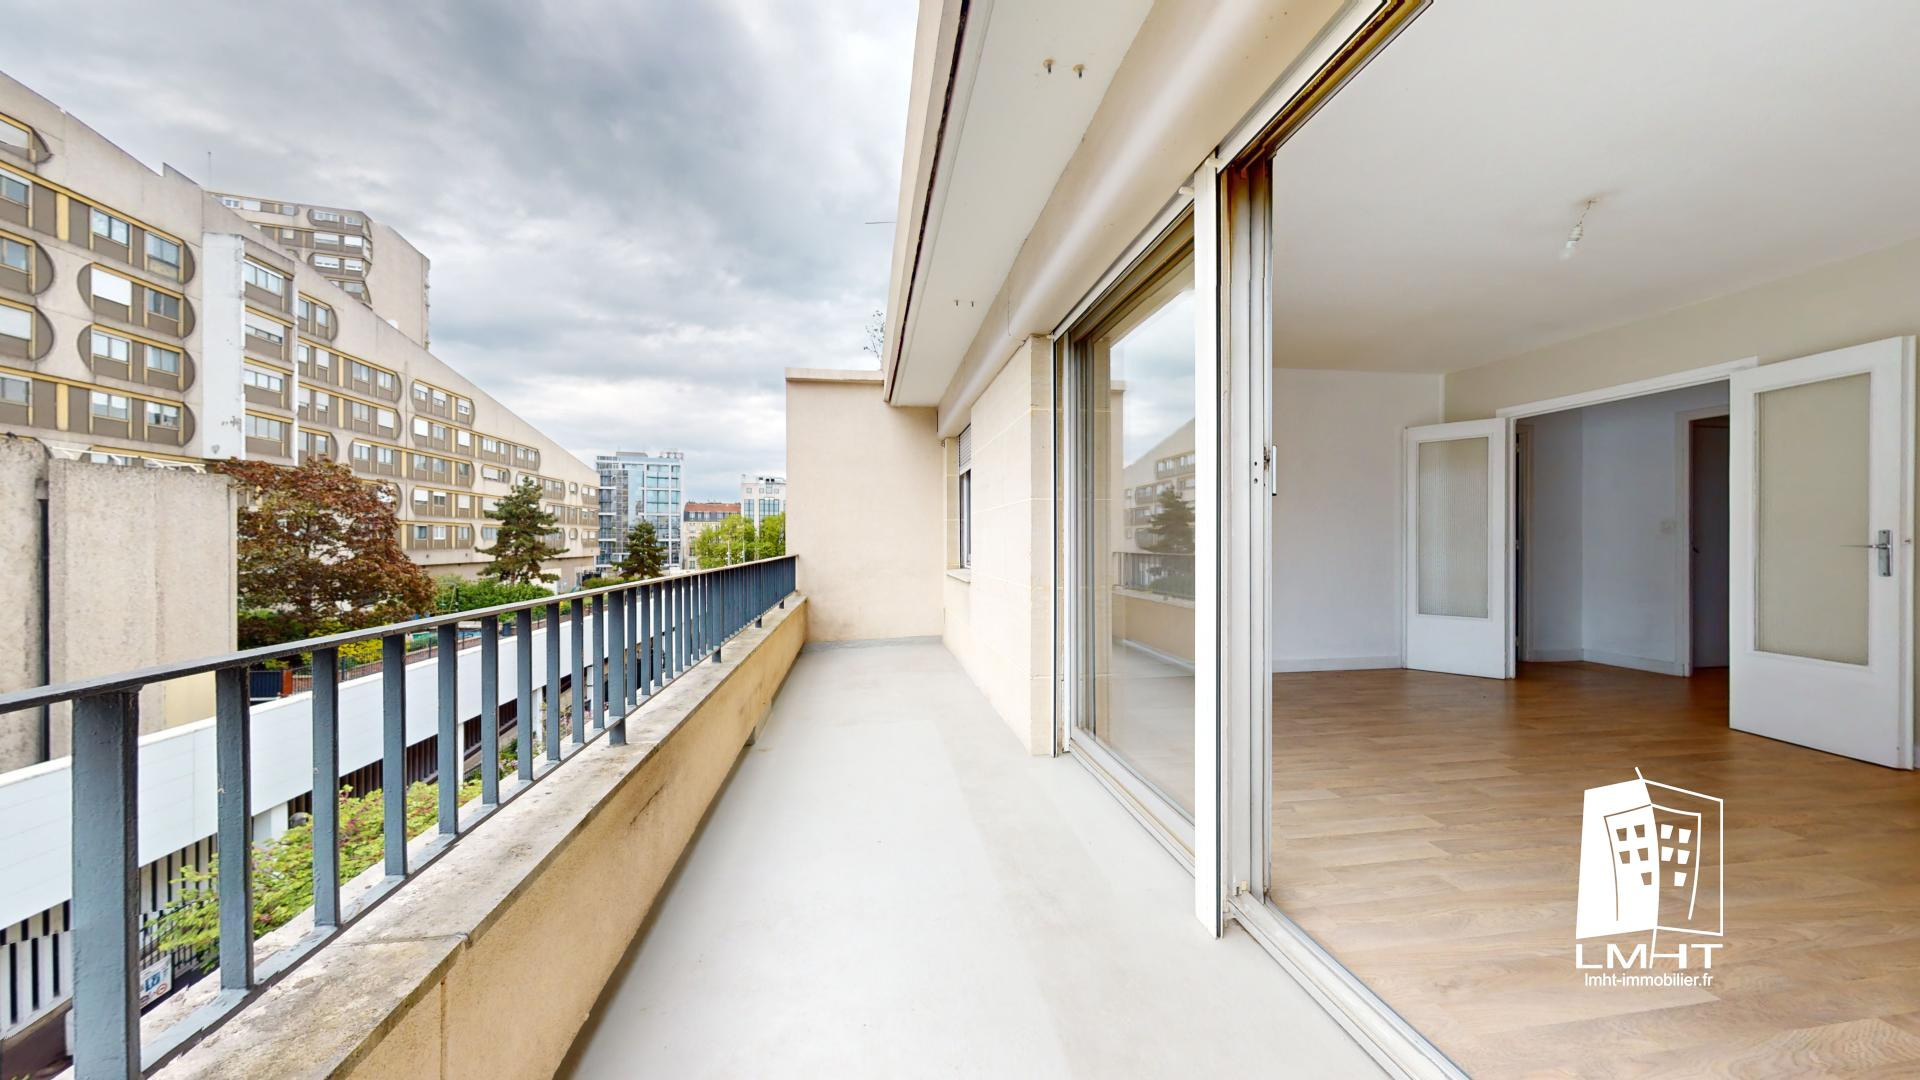 Vente Appartement 55m² 2 Pièces à Boulogne-Billancourt (92100) - Lmht Immobilier